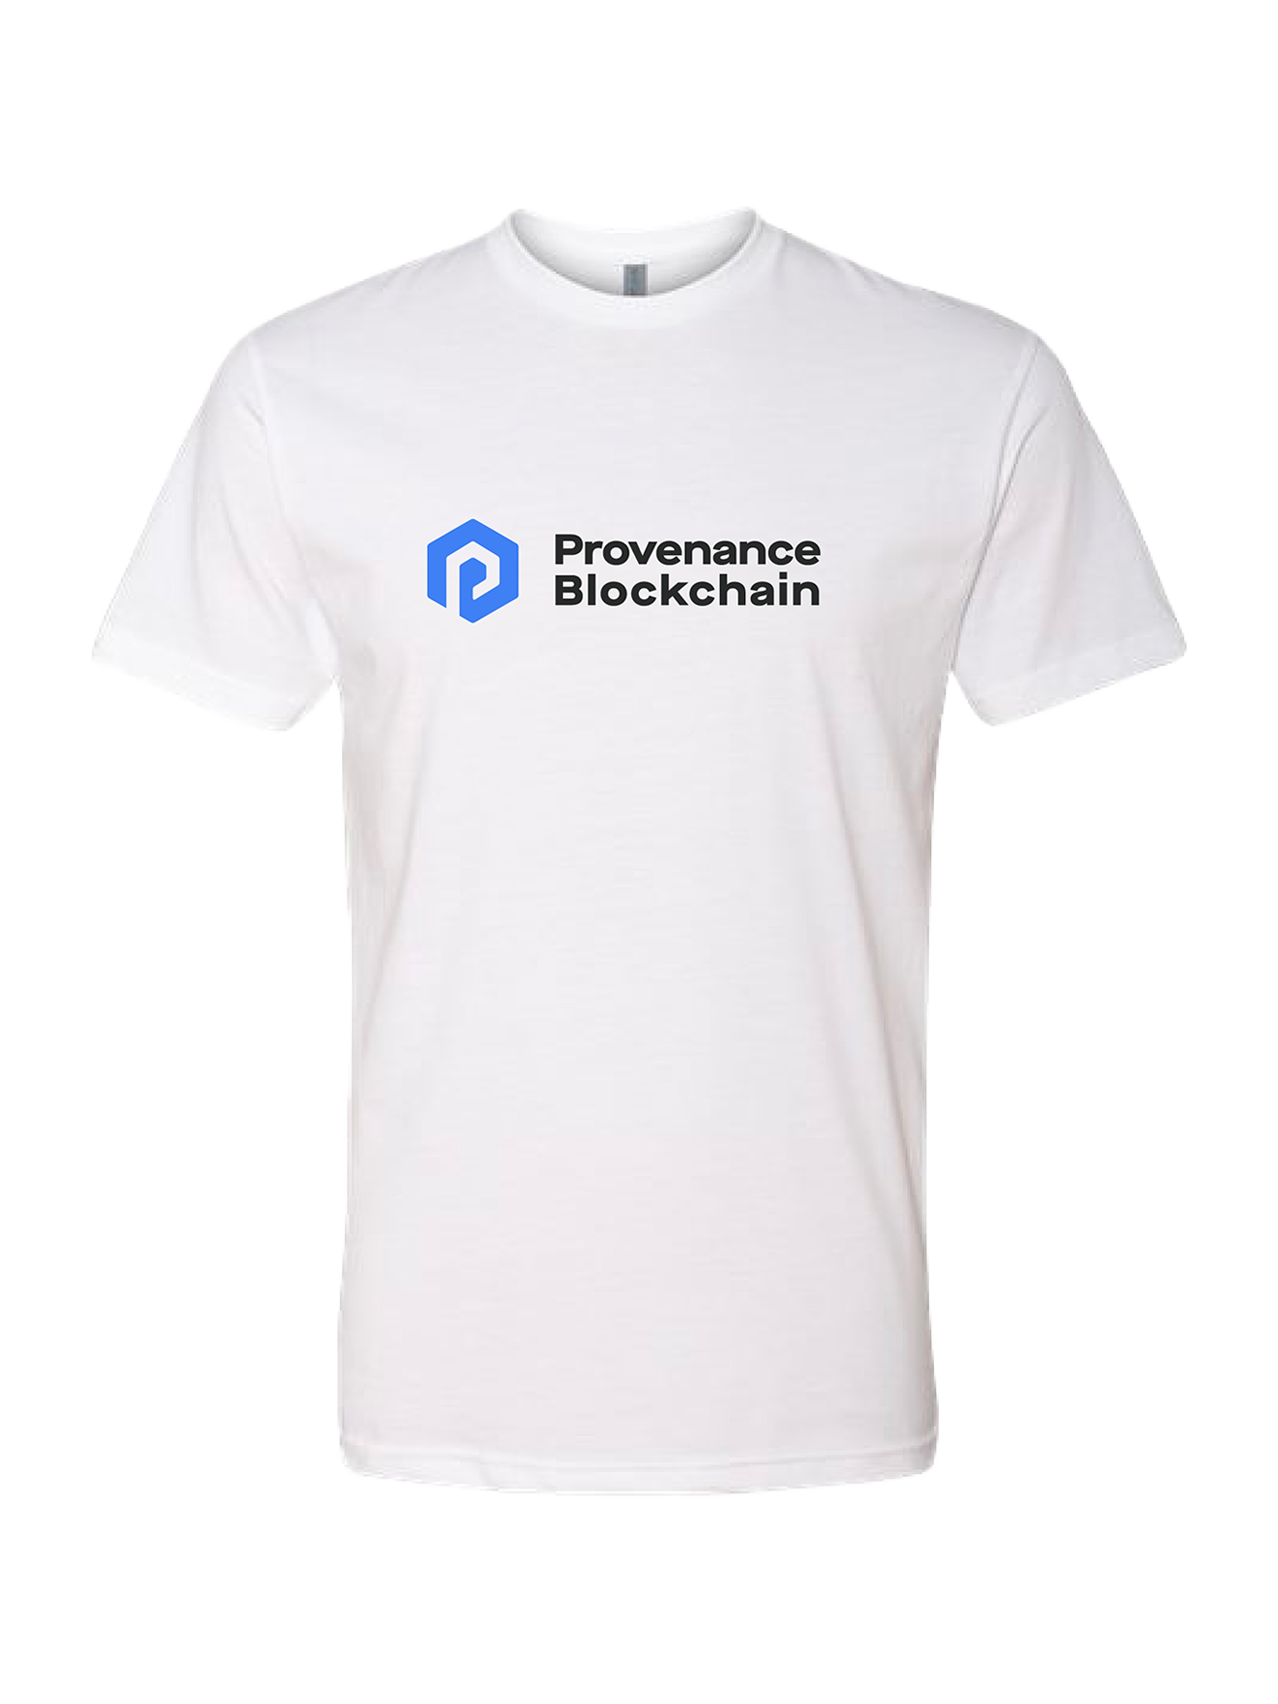 Provenance Blockchain - Next Level 6210